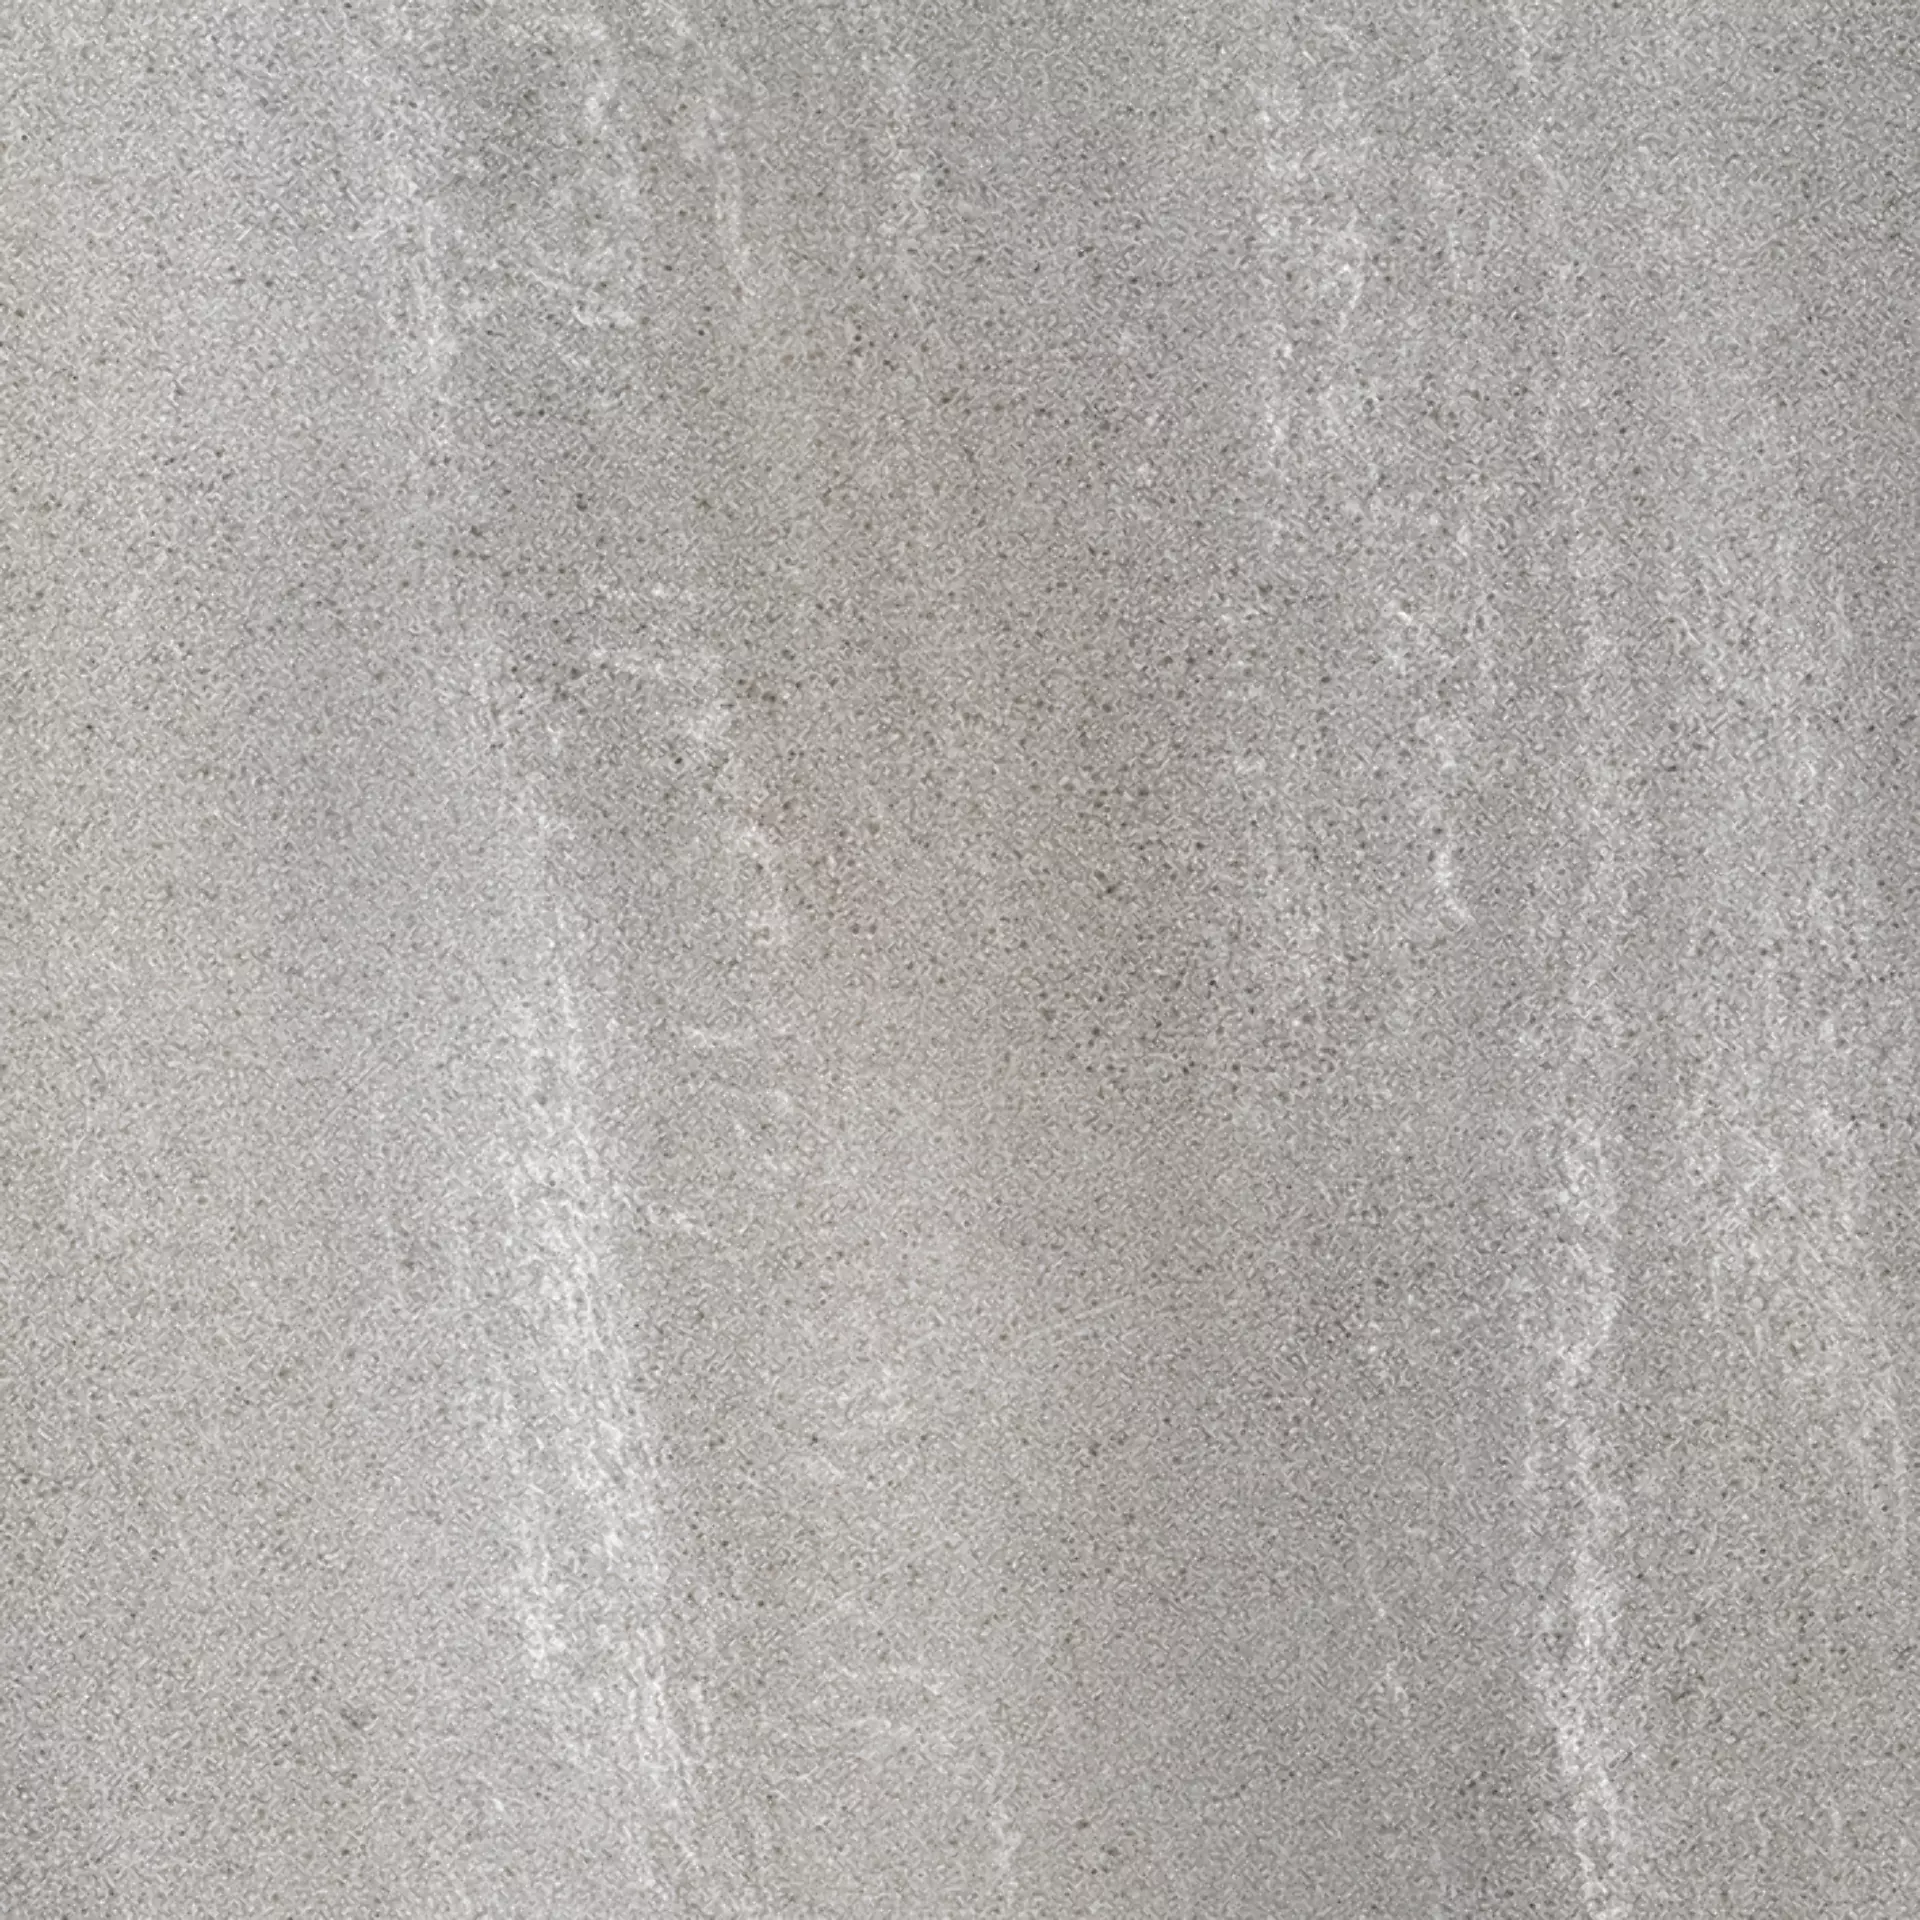 Wandfliese,Bodenfliese Villeroy & Boch Natural Blend Stone Grey Matt Stone Grey 2660-LY60 matt 60x60cm rektifiziert 9mm